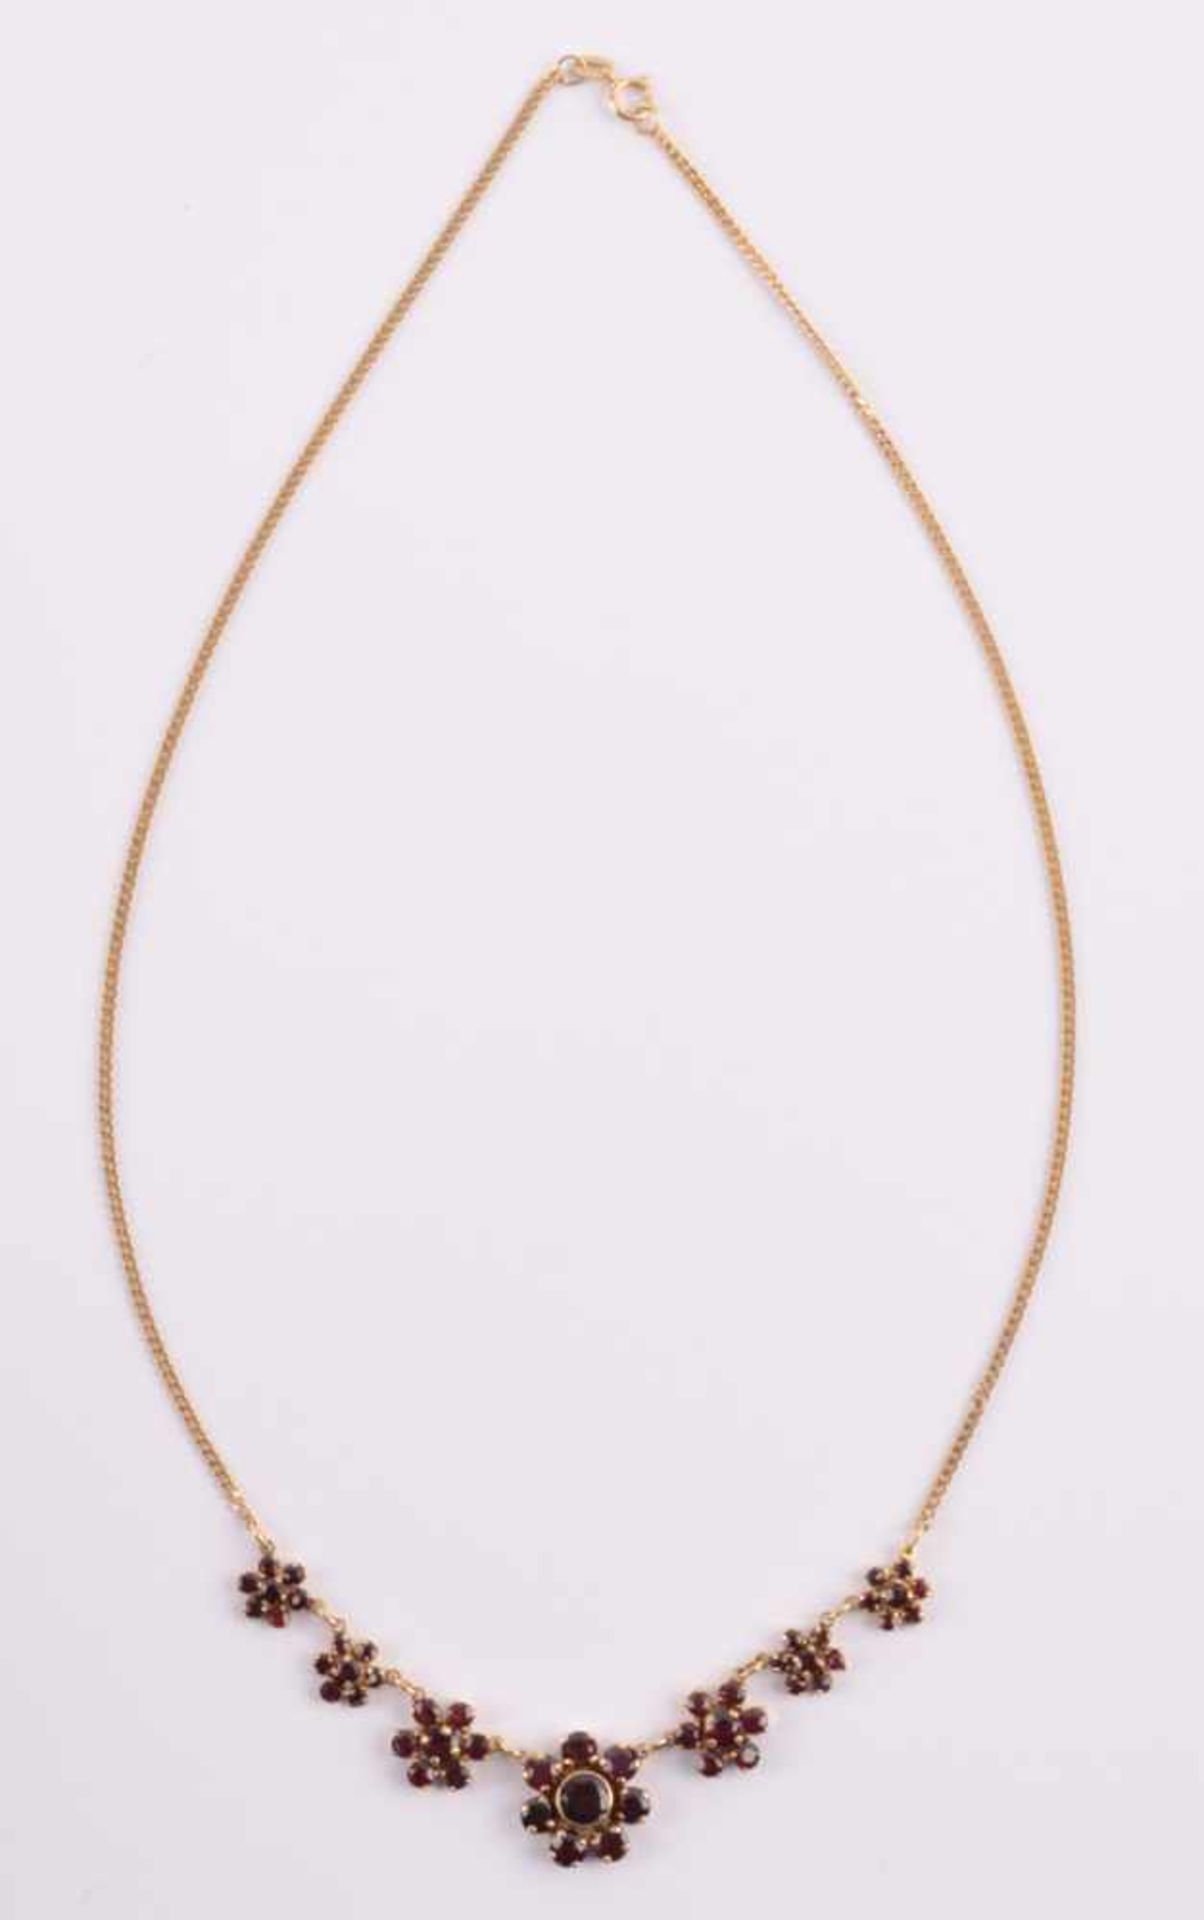 Granat-Collier333/000 GG, Gesamtgewicht ca. 8,7 g, L: ca. 45 cmGarnet necklace333/000 yellow gold, - Bild 2 aus 4